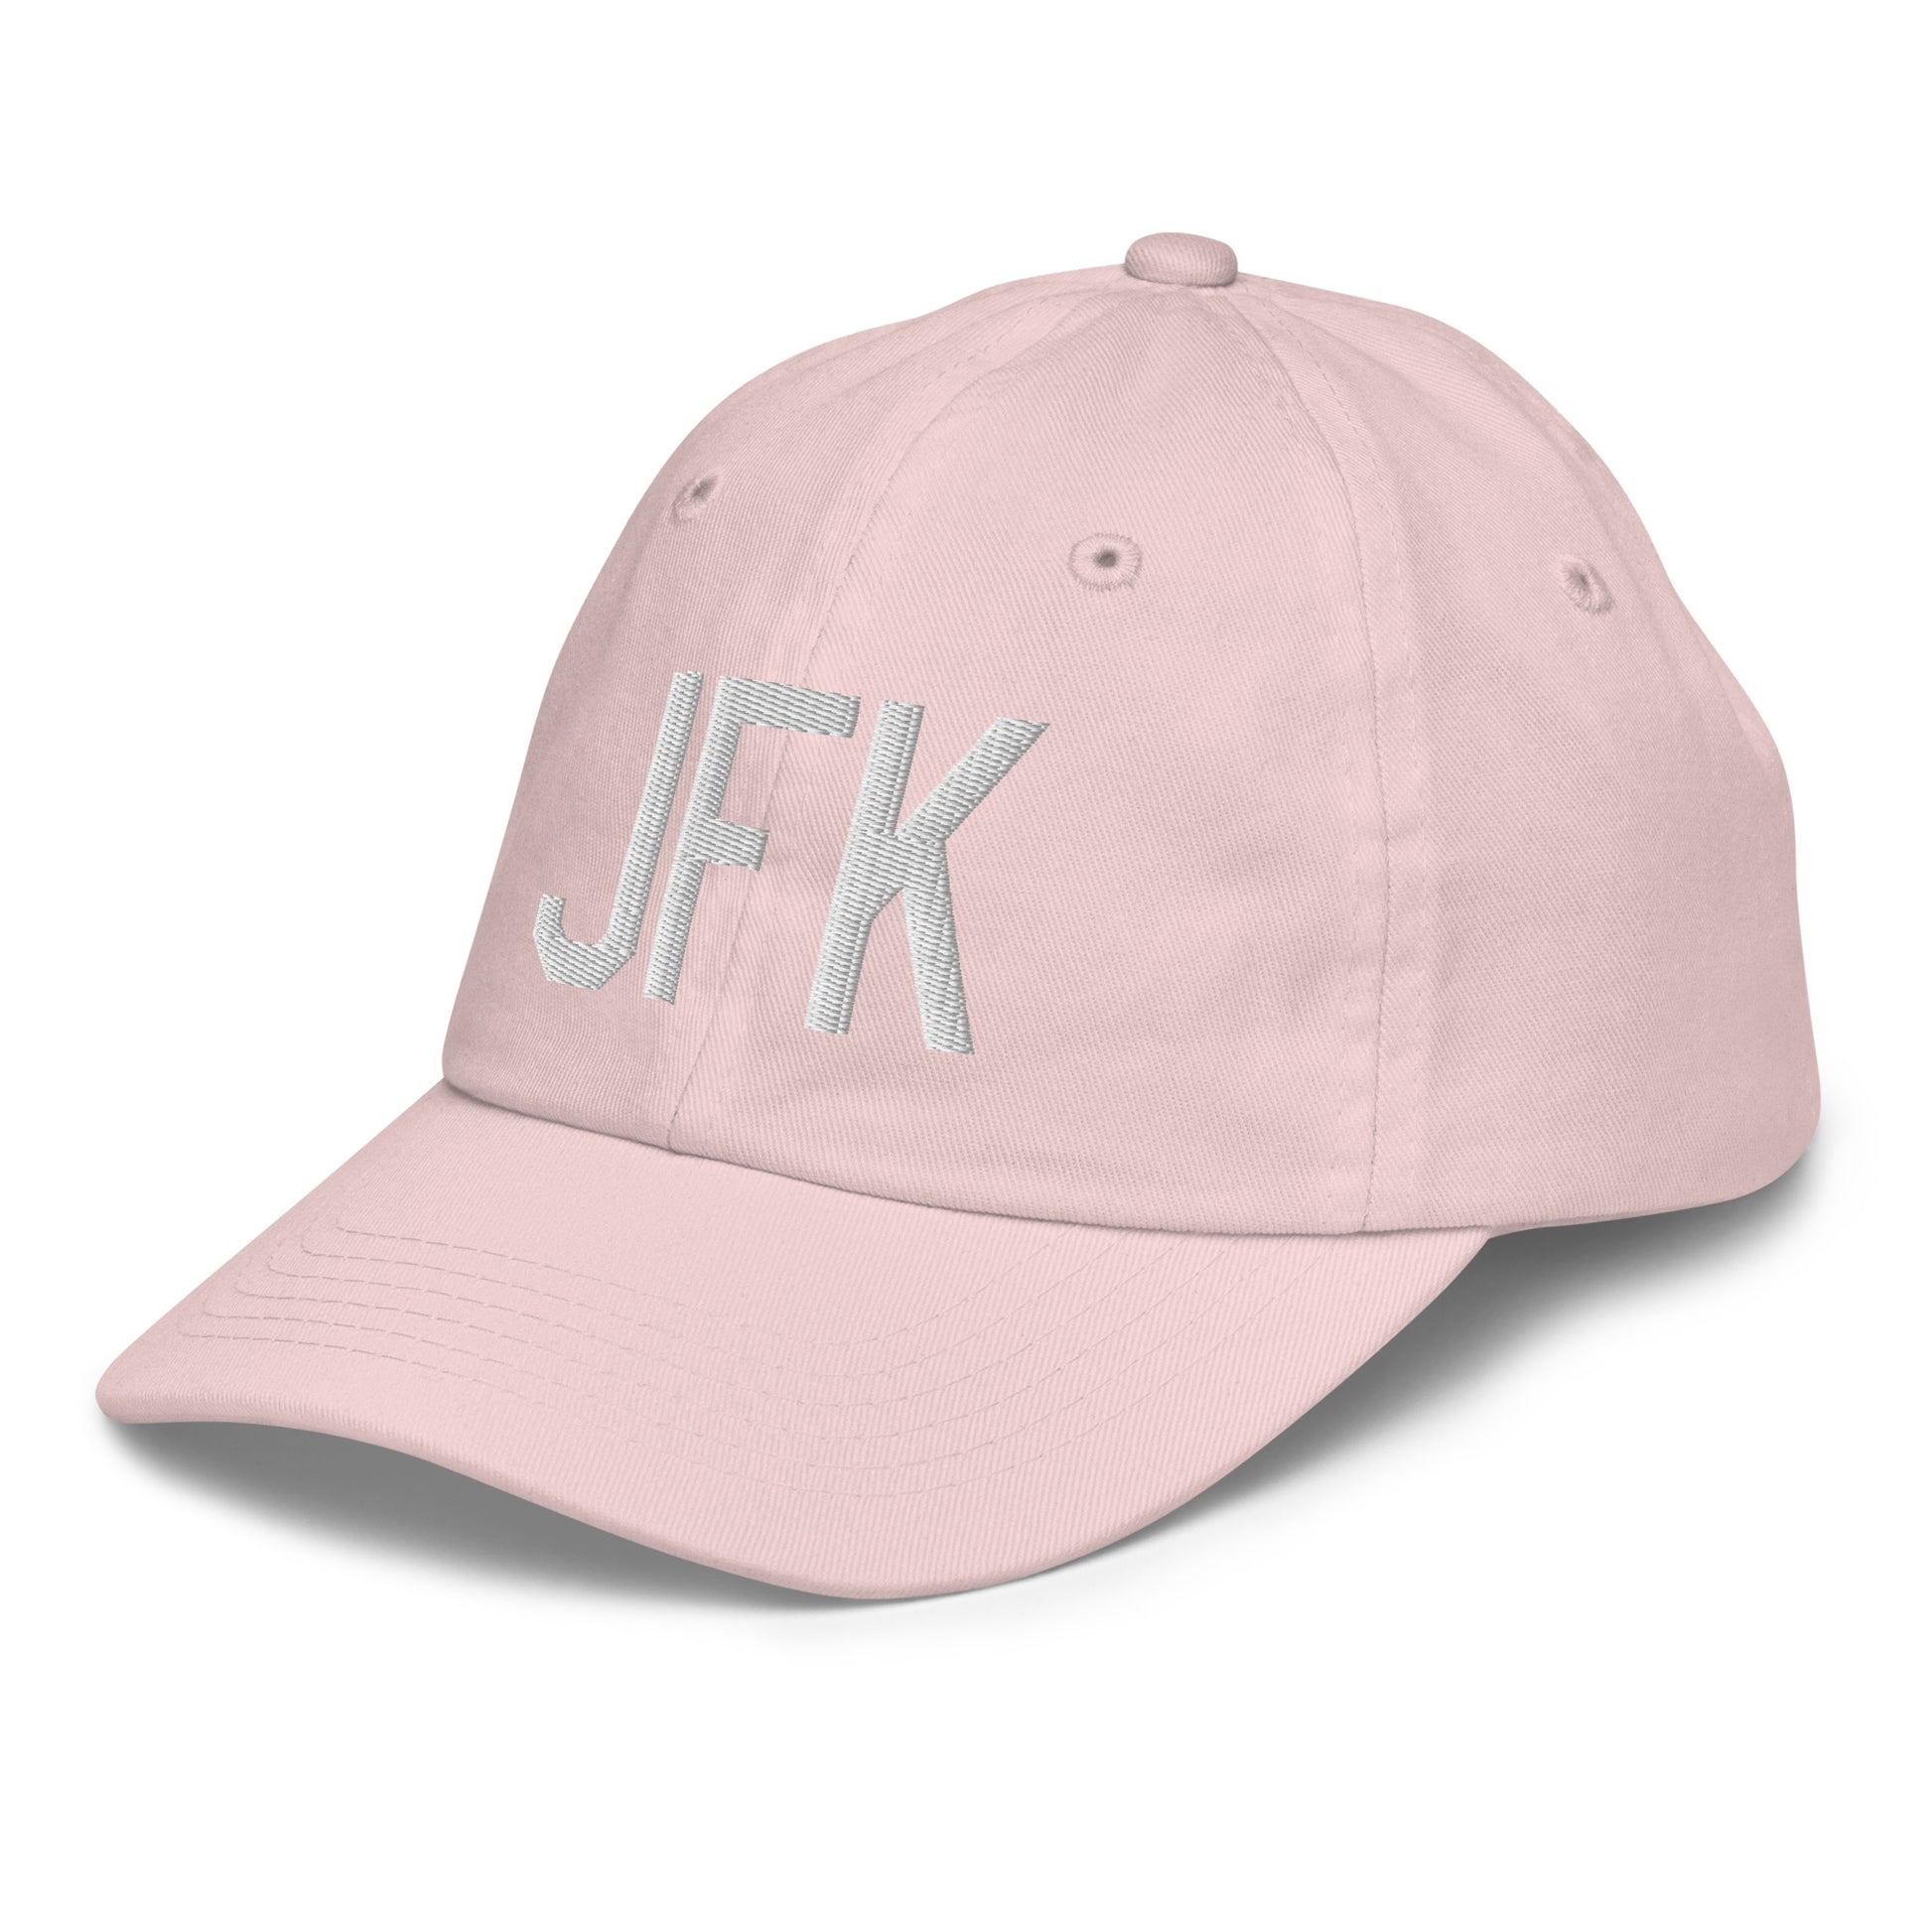 Airport Code Kid's Baseball Cap - White • JFK New York • YHM Designs - Image 33